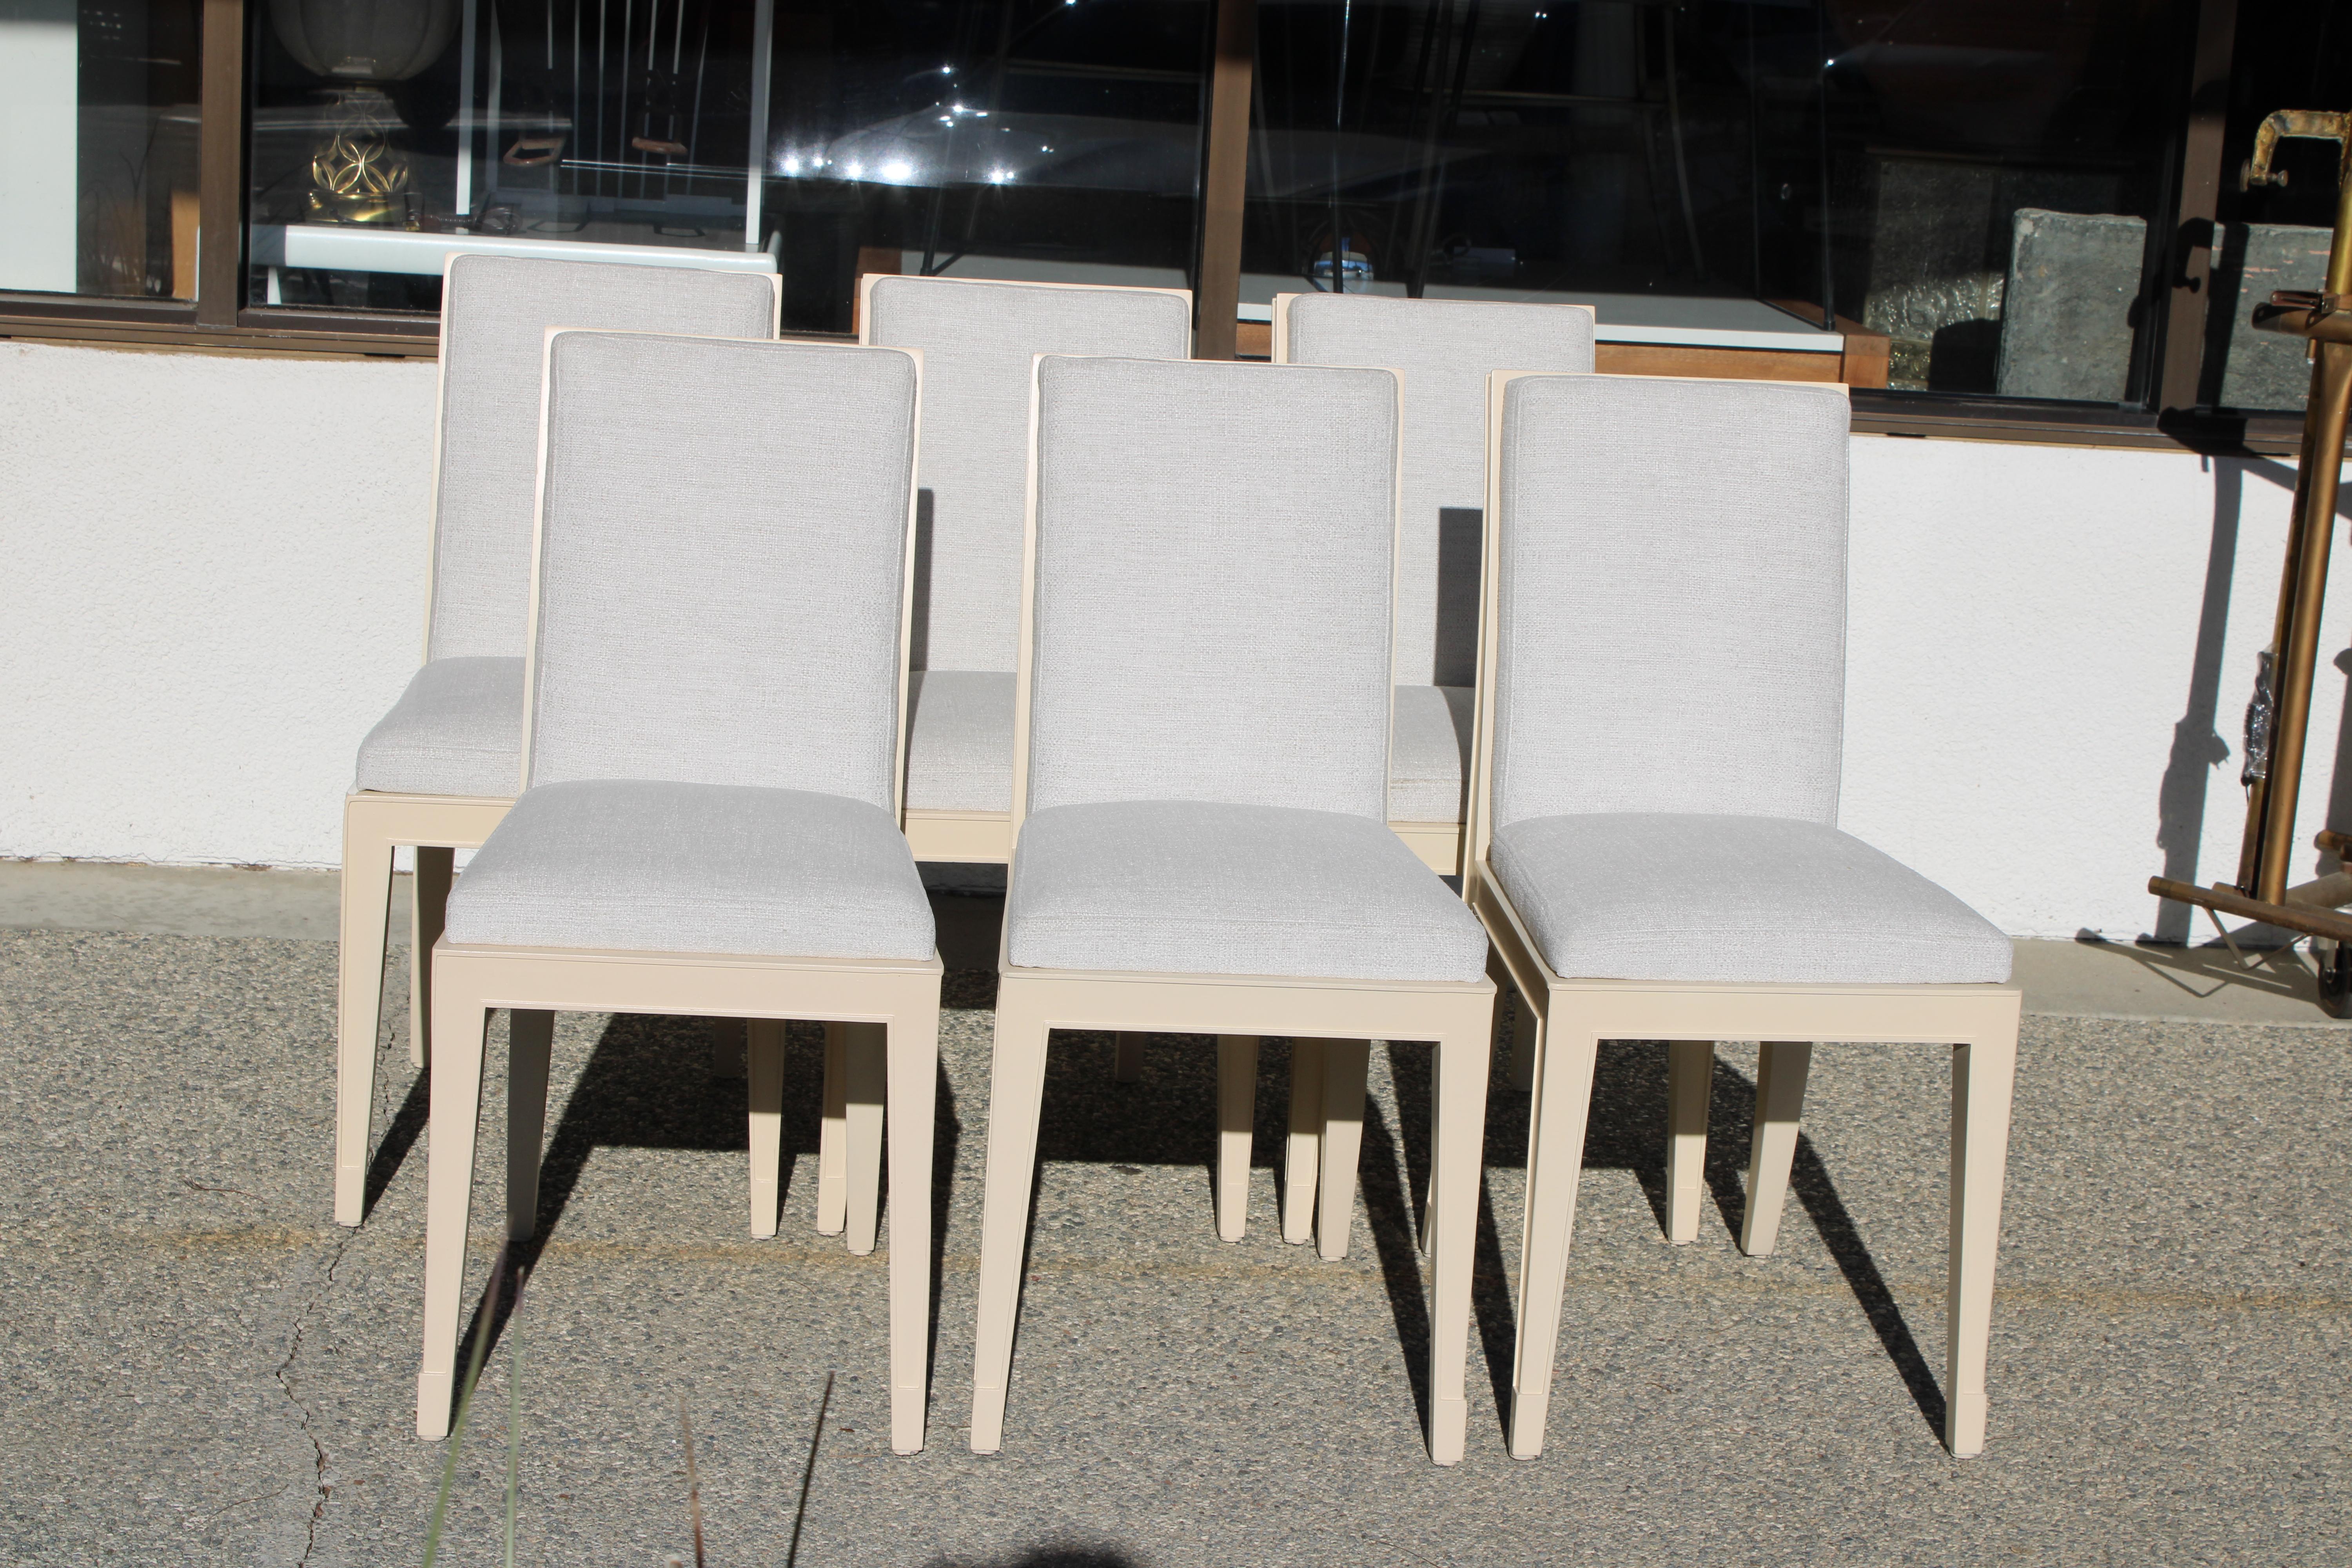 Six petites chaises de salle à manger conçues par Philippe Starck pour l'hôtel Clift Royal Sonesta, San Francisco, CIRCA, vers 2000.  Les chaises ont été remises à neuf et retapissées par des professionnels. Les chaises mesurent 15,5